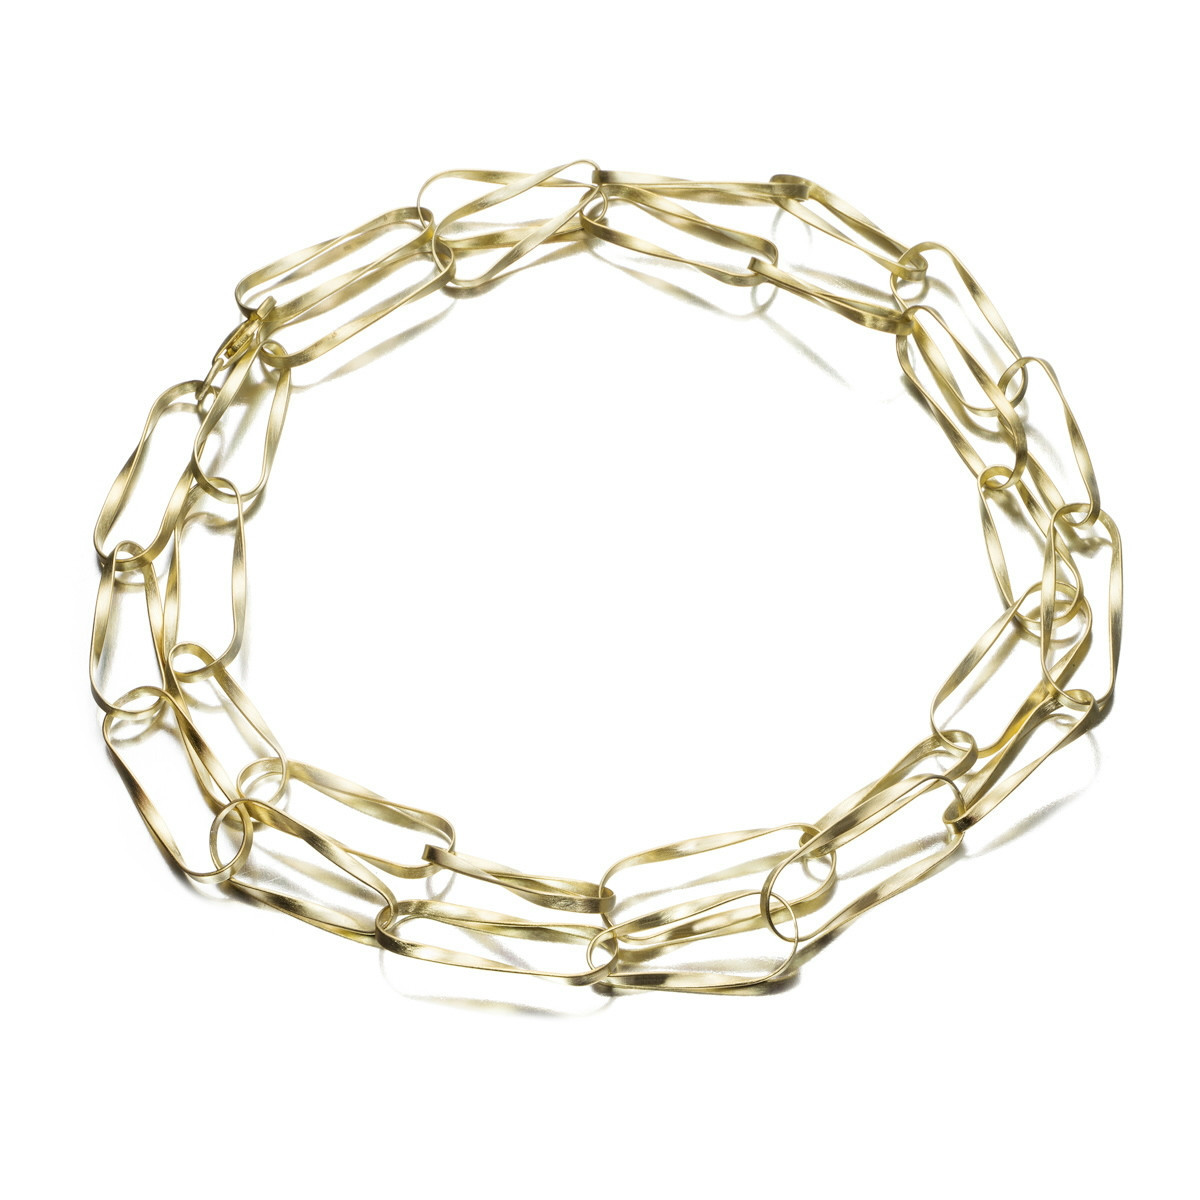 Twist Necklace in Silver. 18k Gold Vermeil